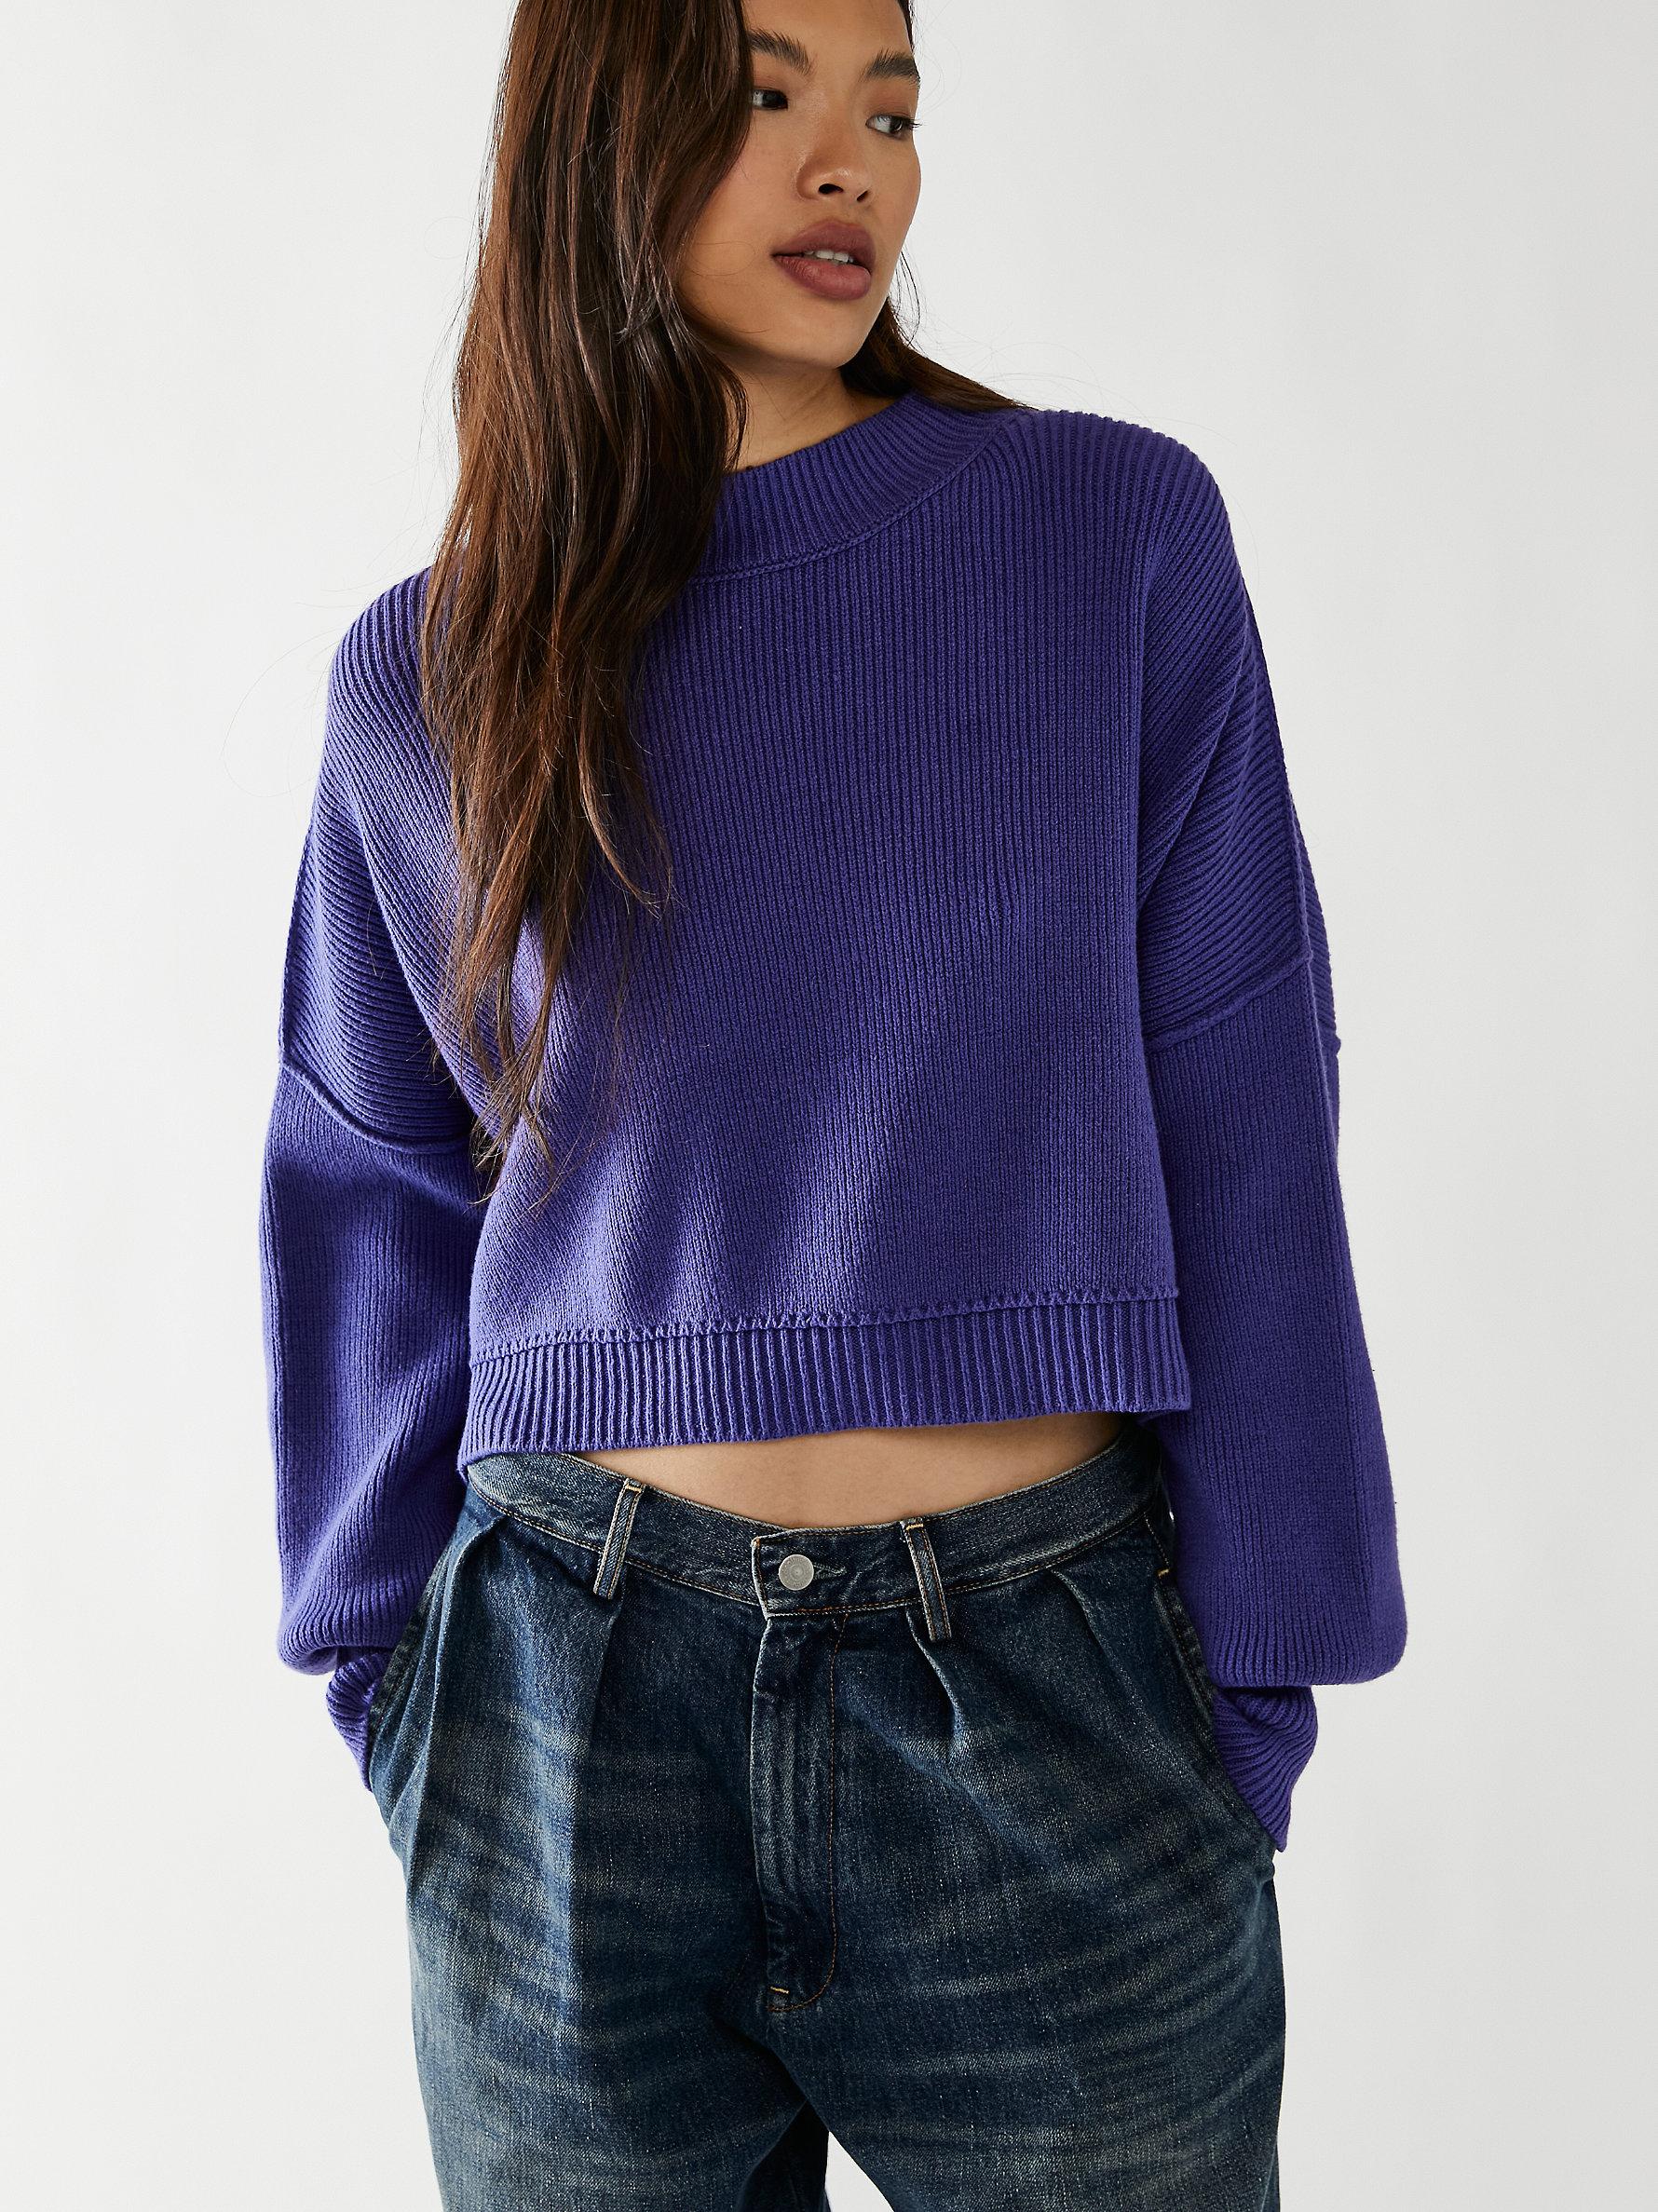 Women's Easy Street Stripe Crop Pullover Sweater, Free People